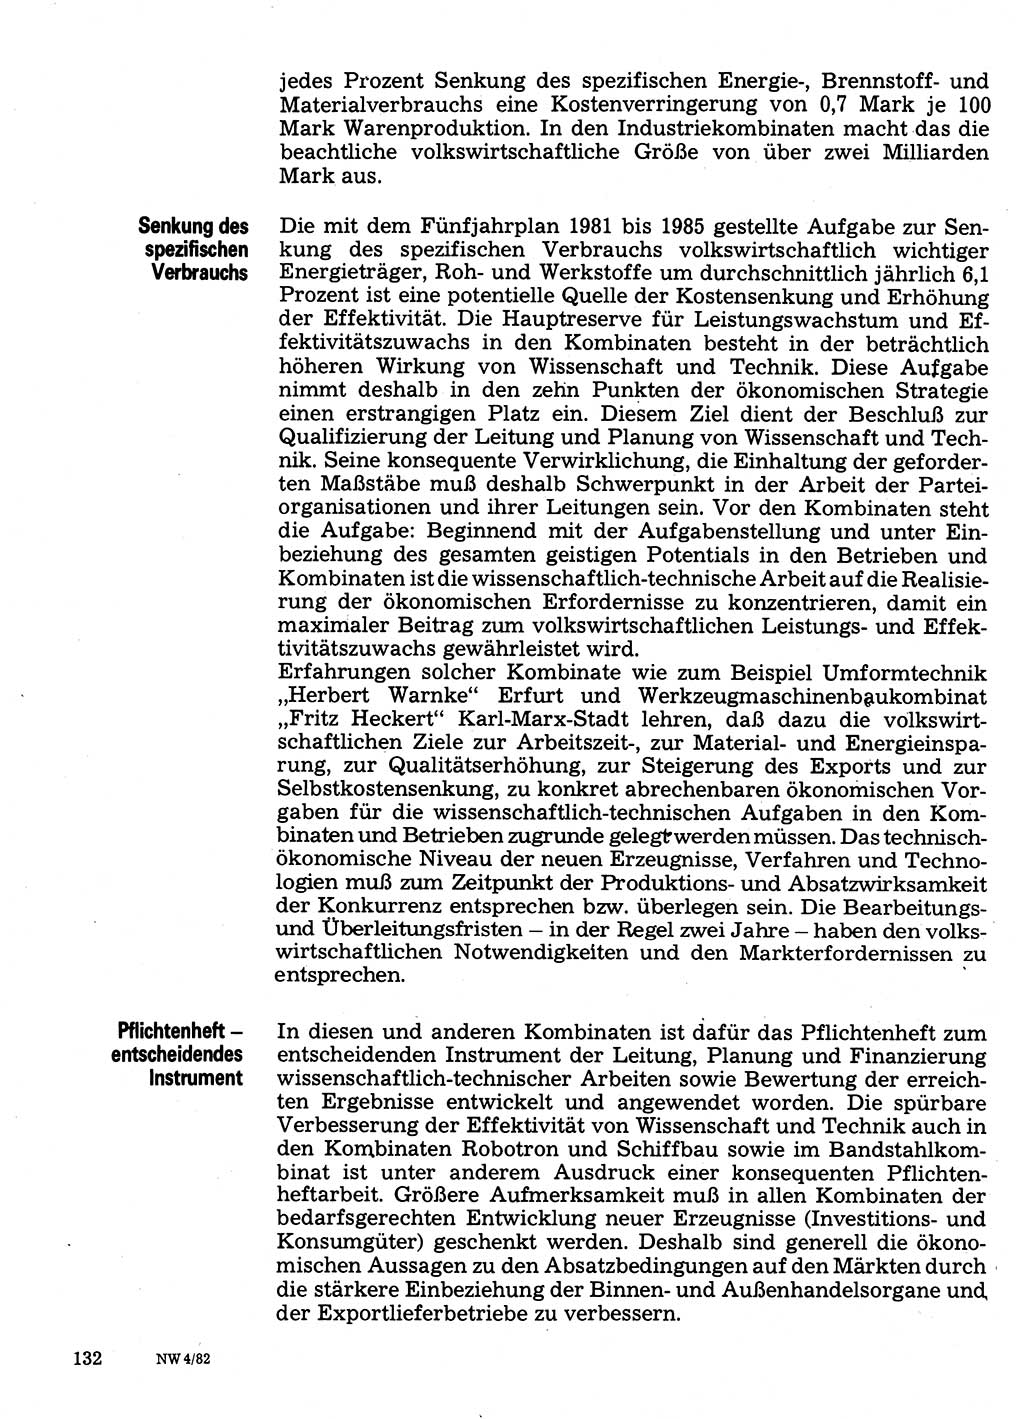 Neuer Weg (NW), Organ des Zentralkomitees (ZK) der SED (Sozialistische Einheitspartei Deutschlands) für Fragen des Parteilebens, 37. Jahrgang [Deutsche Demokratische Republik (DDR)] 1982, Seite 132 (NW ZK SED DDR 1982, S. 132)